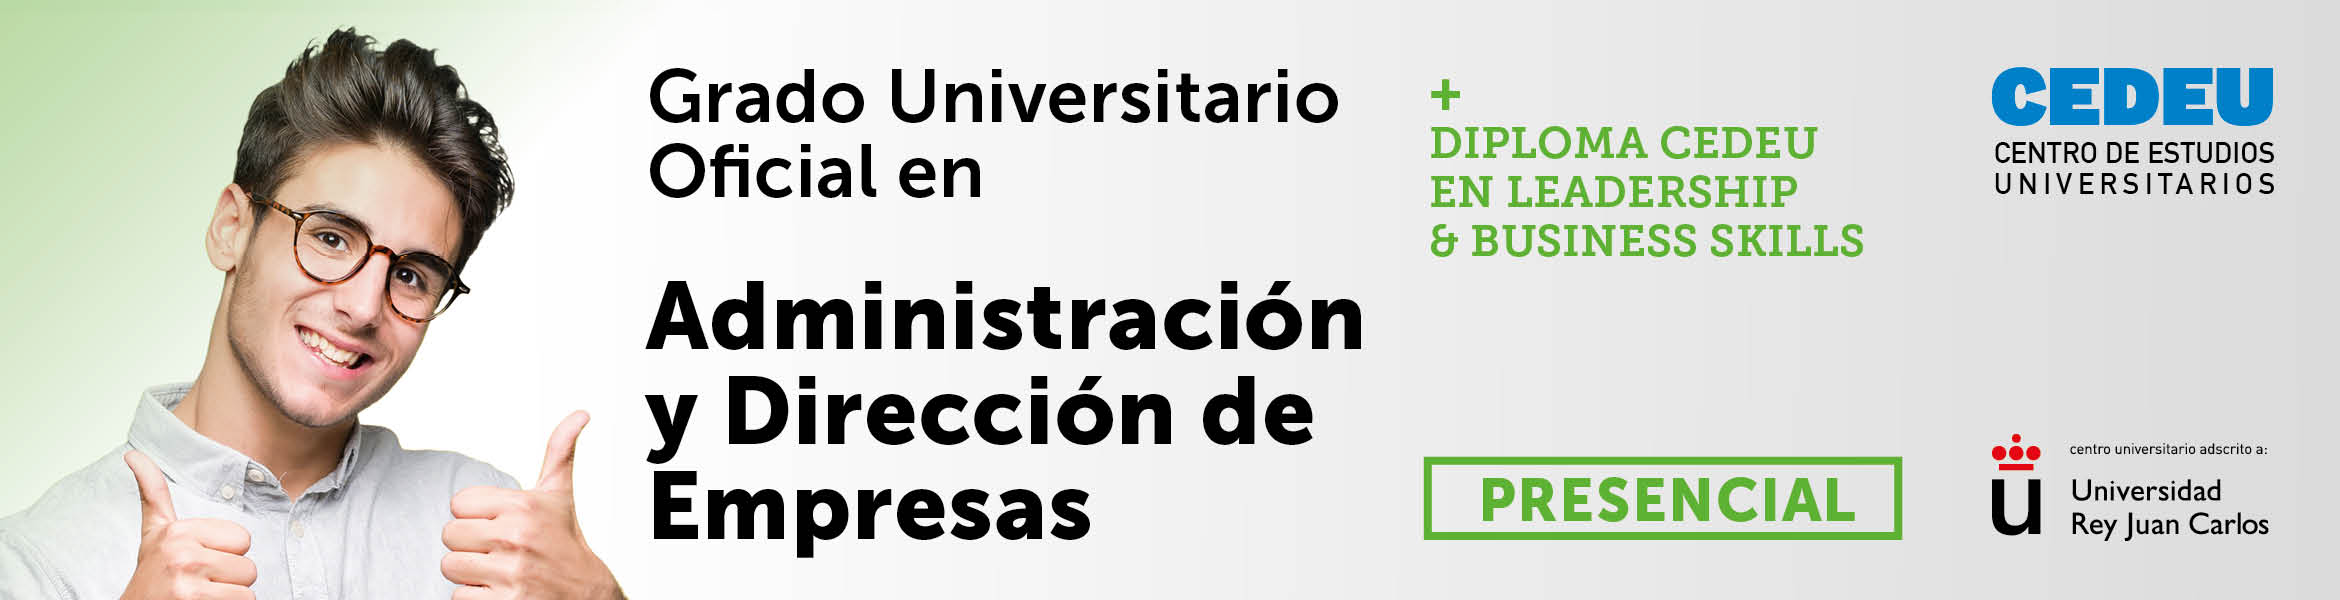 Grado Universitario URJC en Administración y Dirección de Empresas (ADE) + Diploma